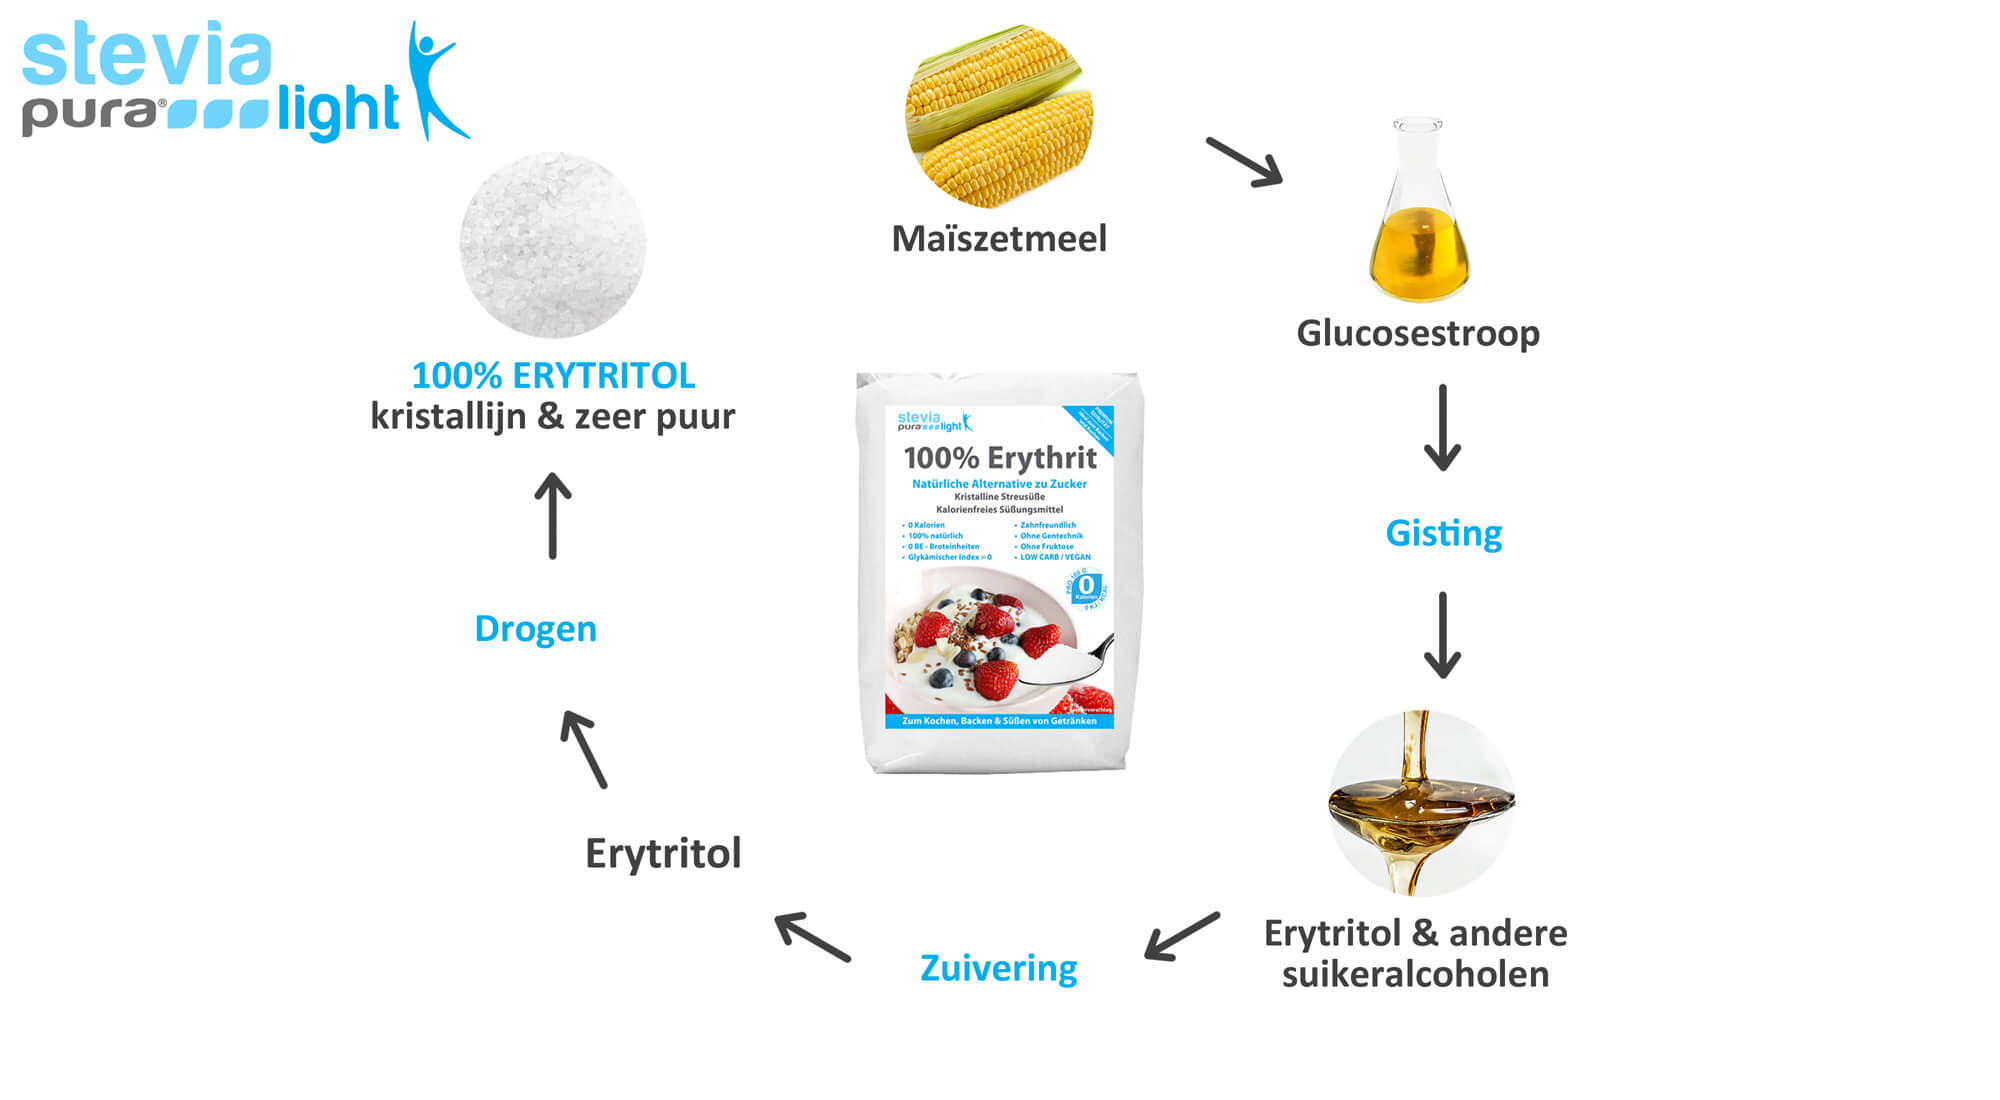 De productie van Erythritol : Erythritol  wordt verkregen door fermentatie.